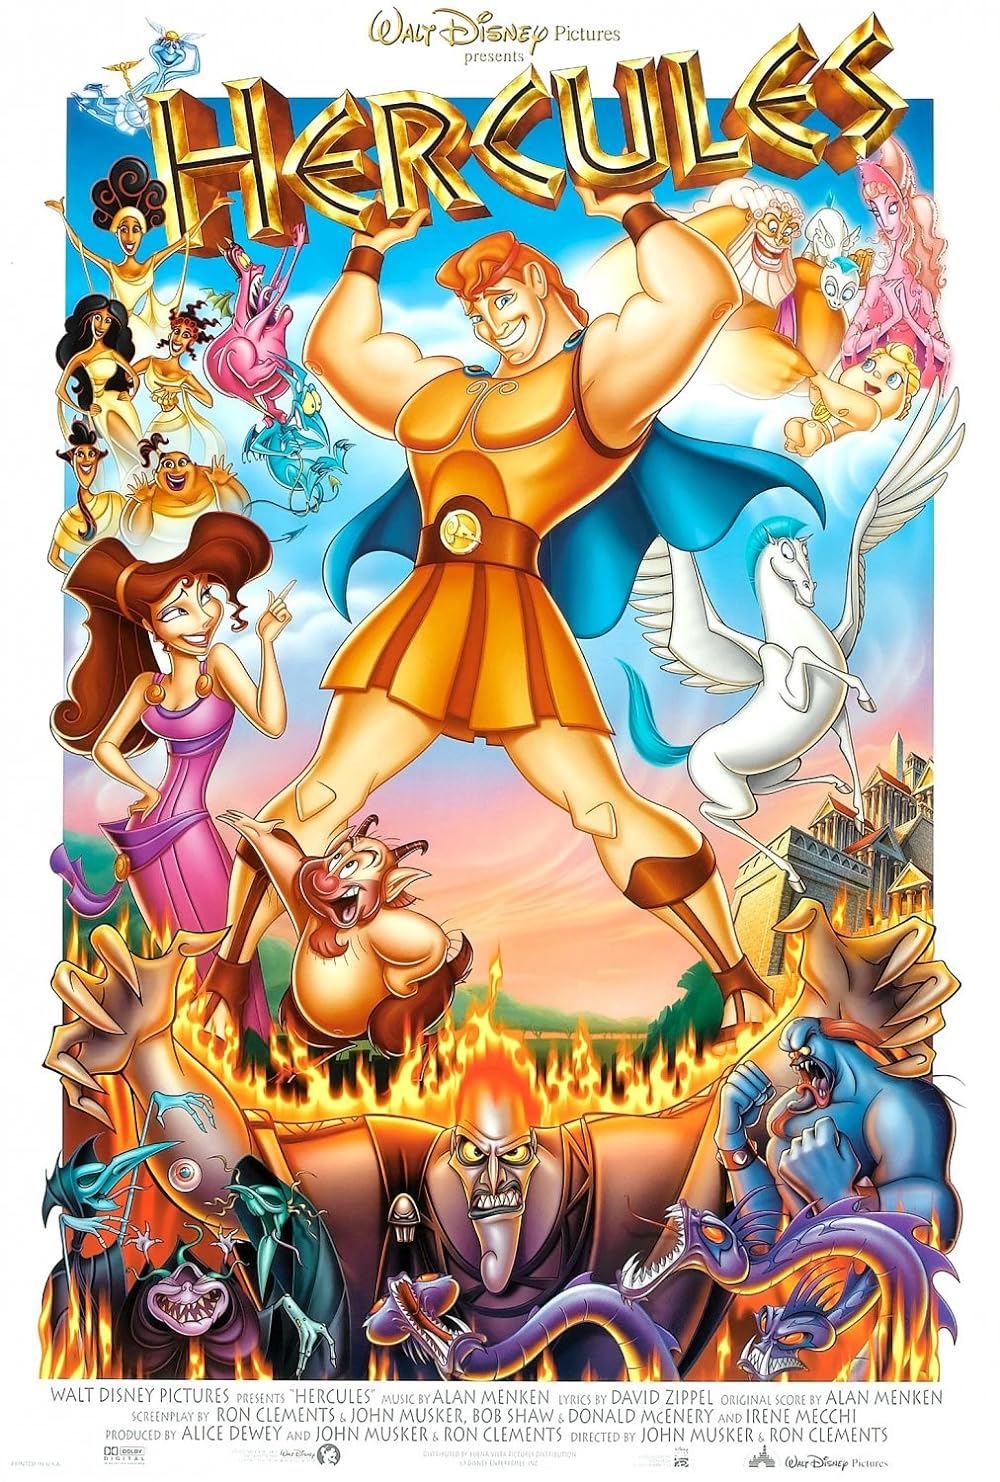 FULL MOVIE: Hercules (1997)